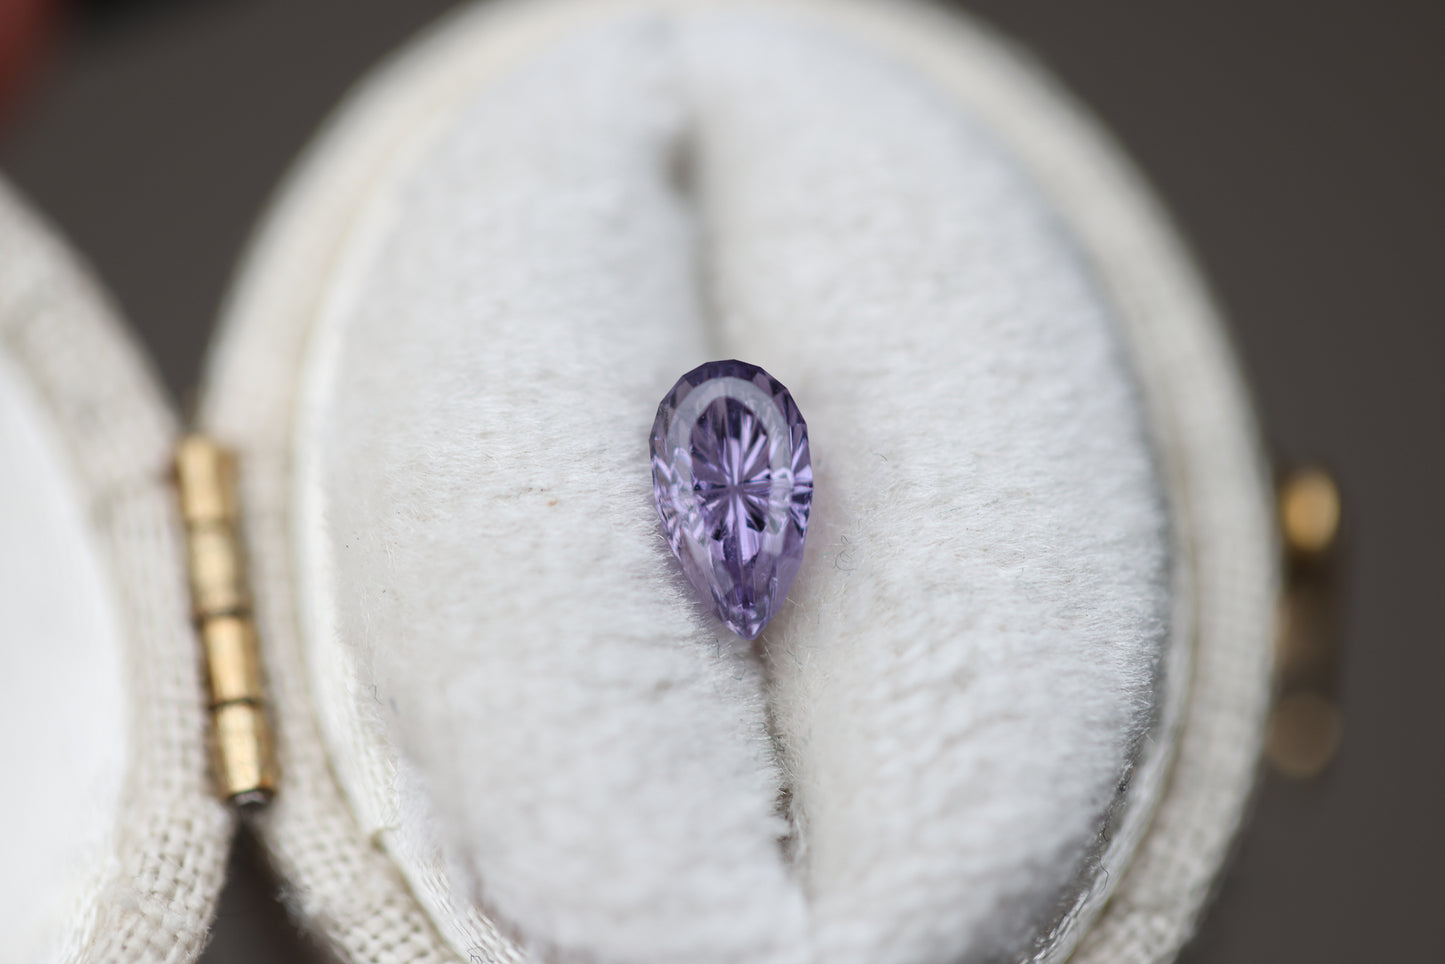 .89ct pear purple sapphire - Starbrite cut by John Dyer